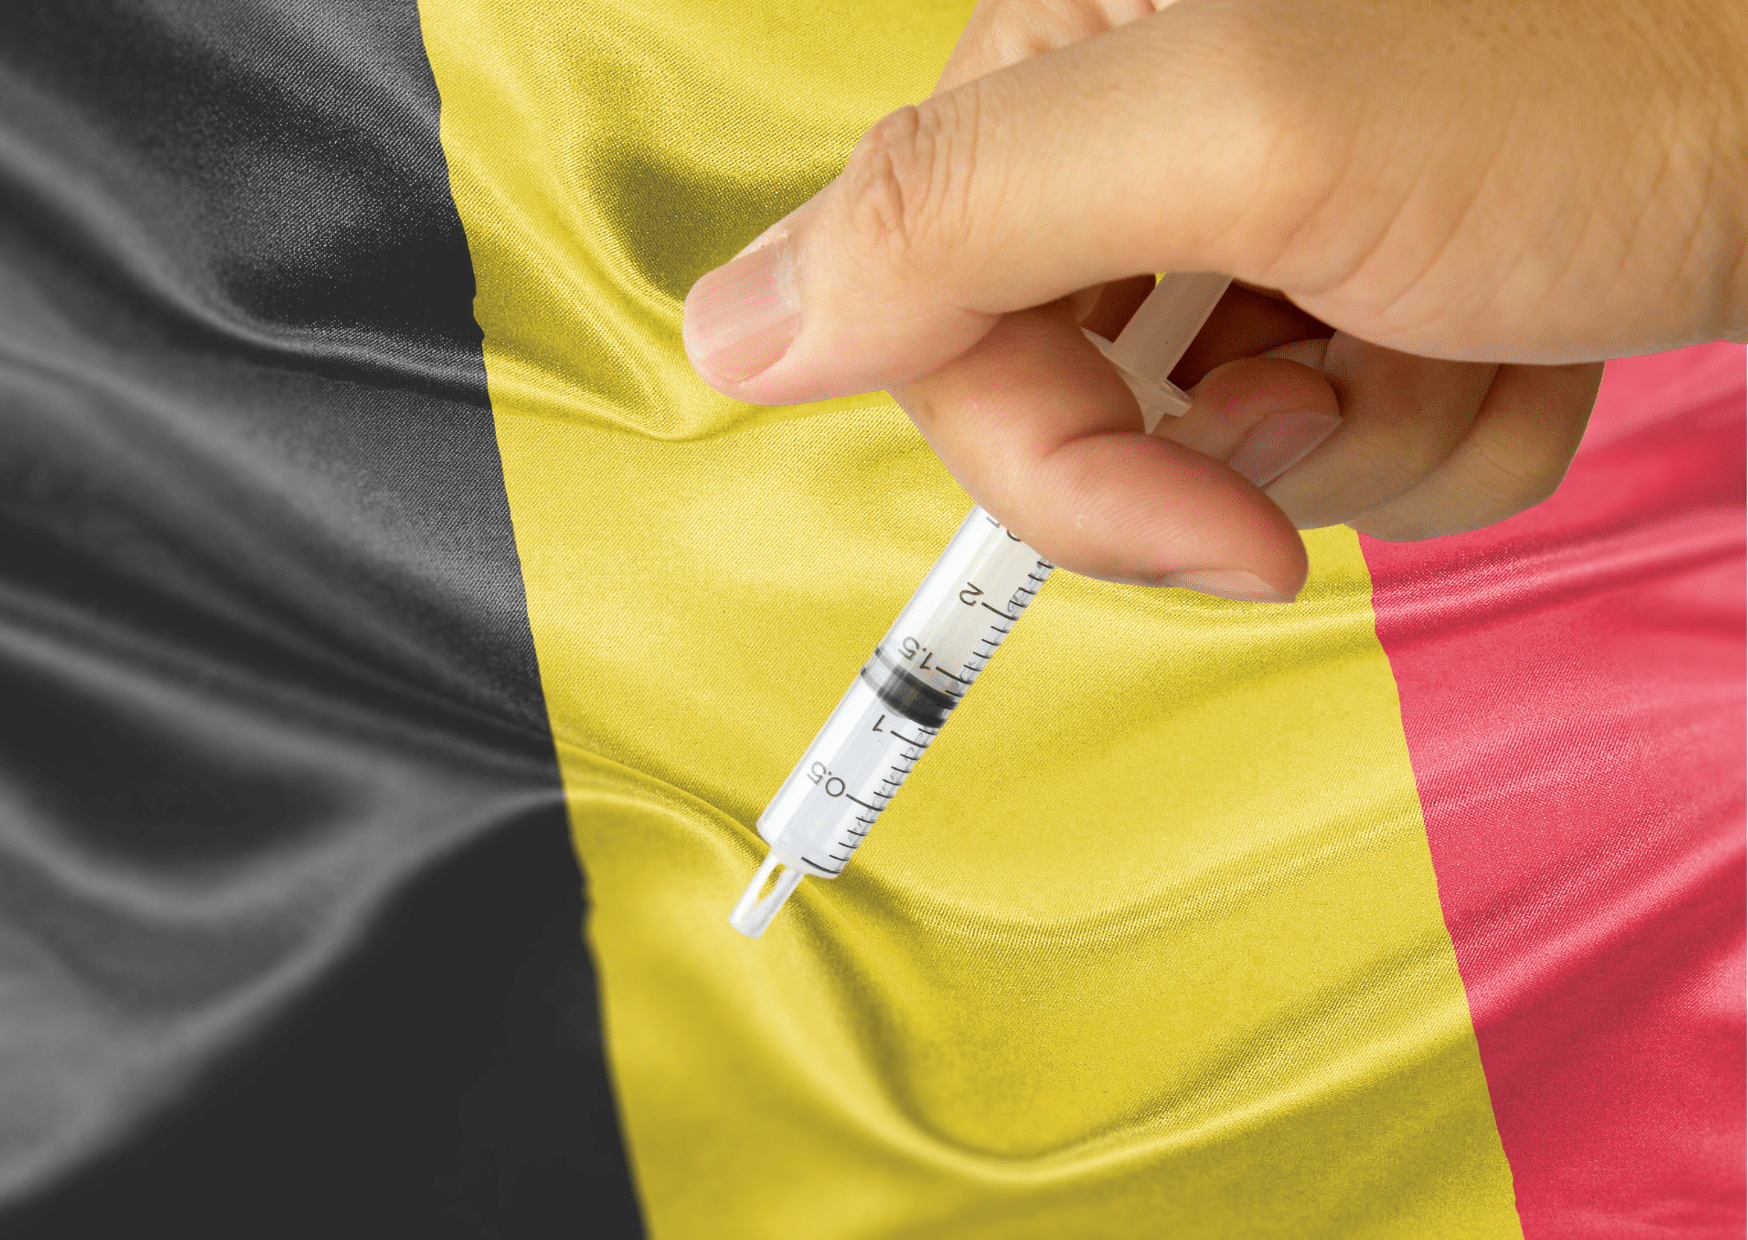 le fiasco choquant d’une euthanasie en belgique femme belge étouffée dans un coussin suite à une euthanasie ratée